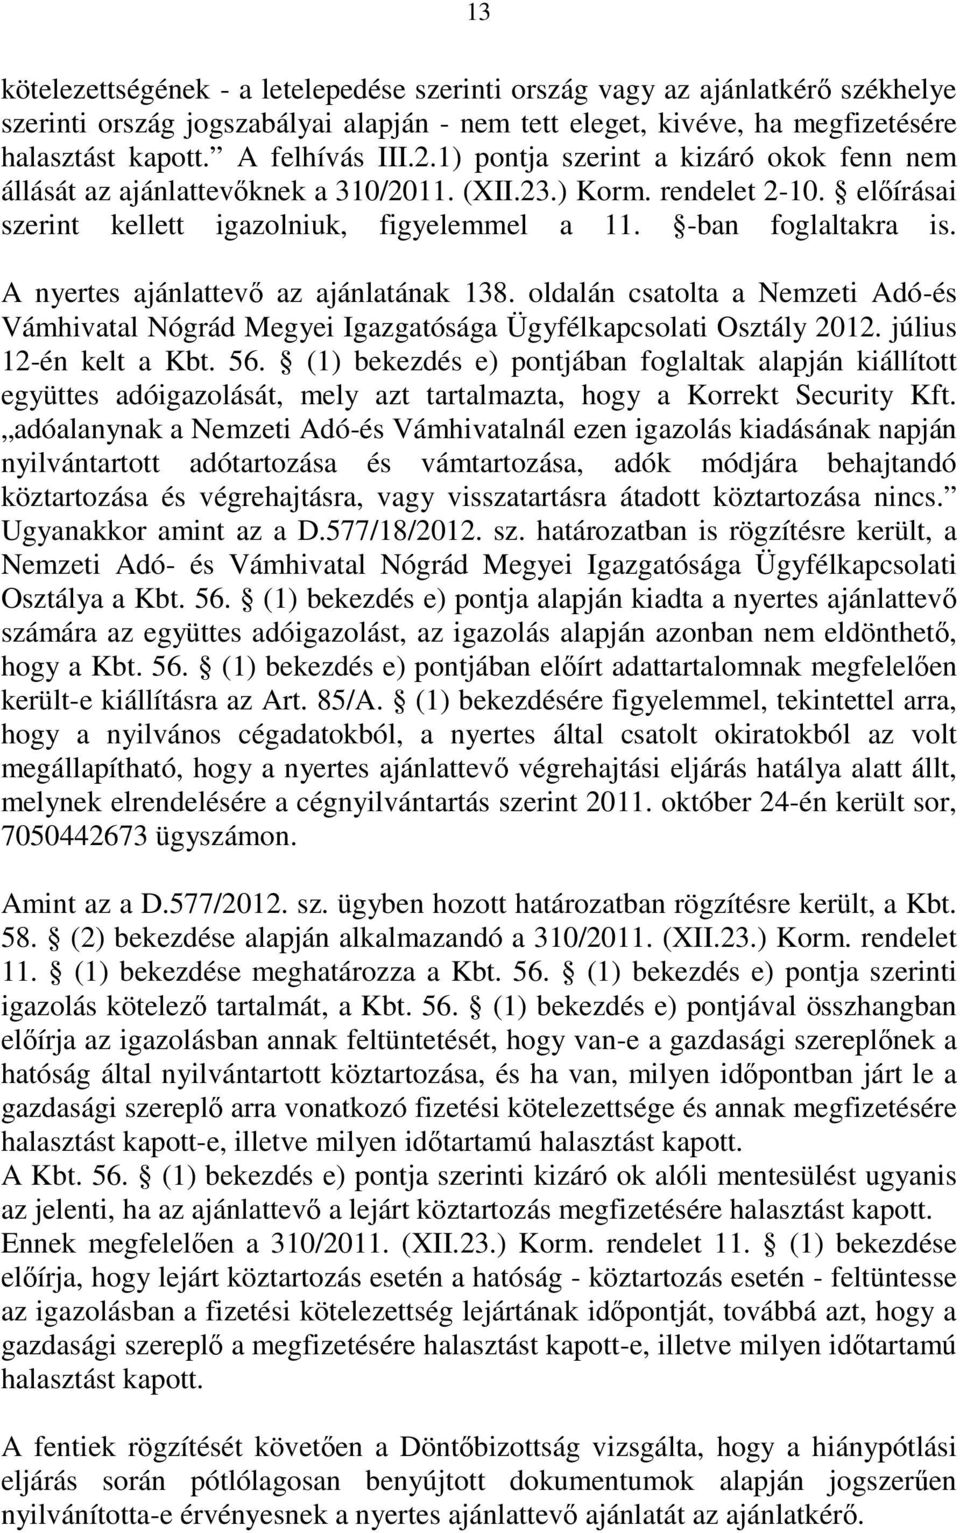 A nyertes ajánlattevı az ajánlatának 138. oldalán csatolta a Nemzeti Adó-és Vámhivatal Nógrád Megyei Igazgatósága Ügyfélkapcsolati Osztály 2012. július 12-én kelt a Kbt. 56.